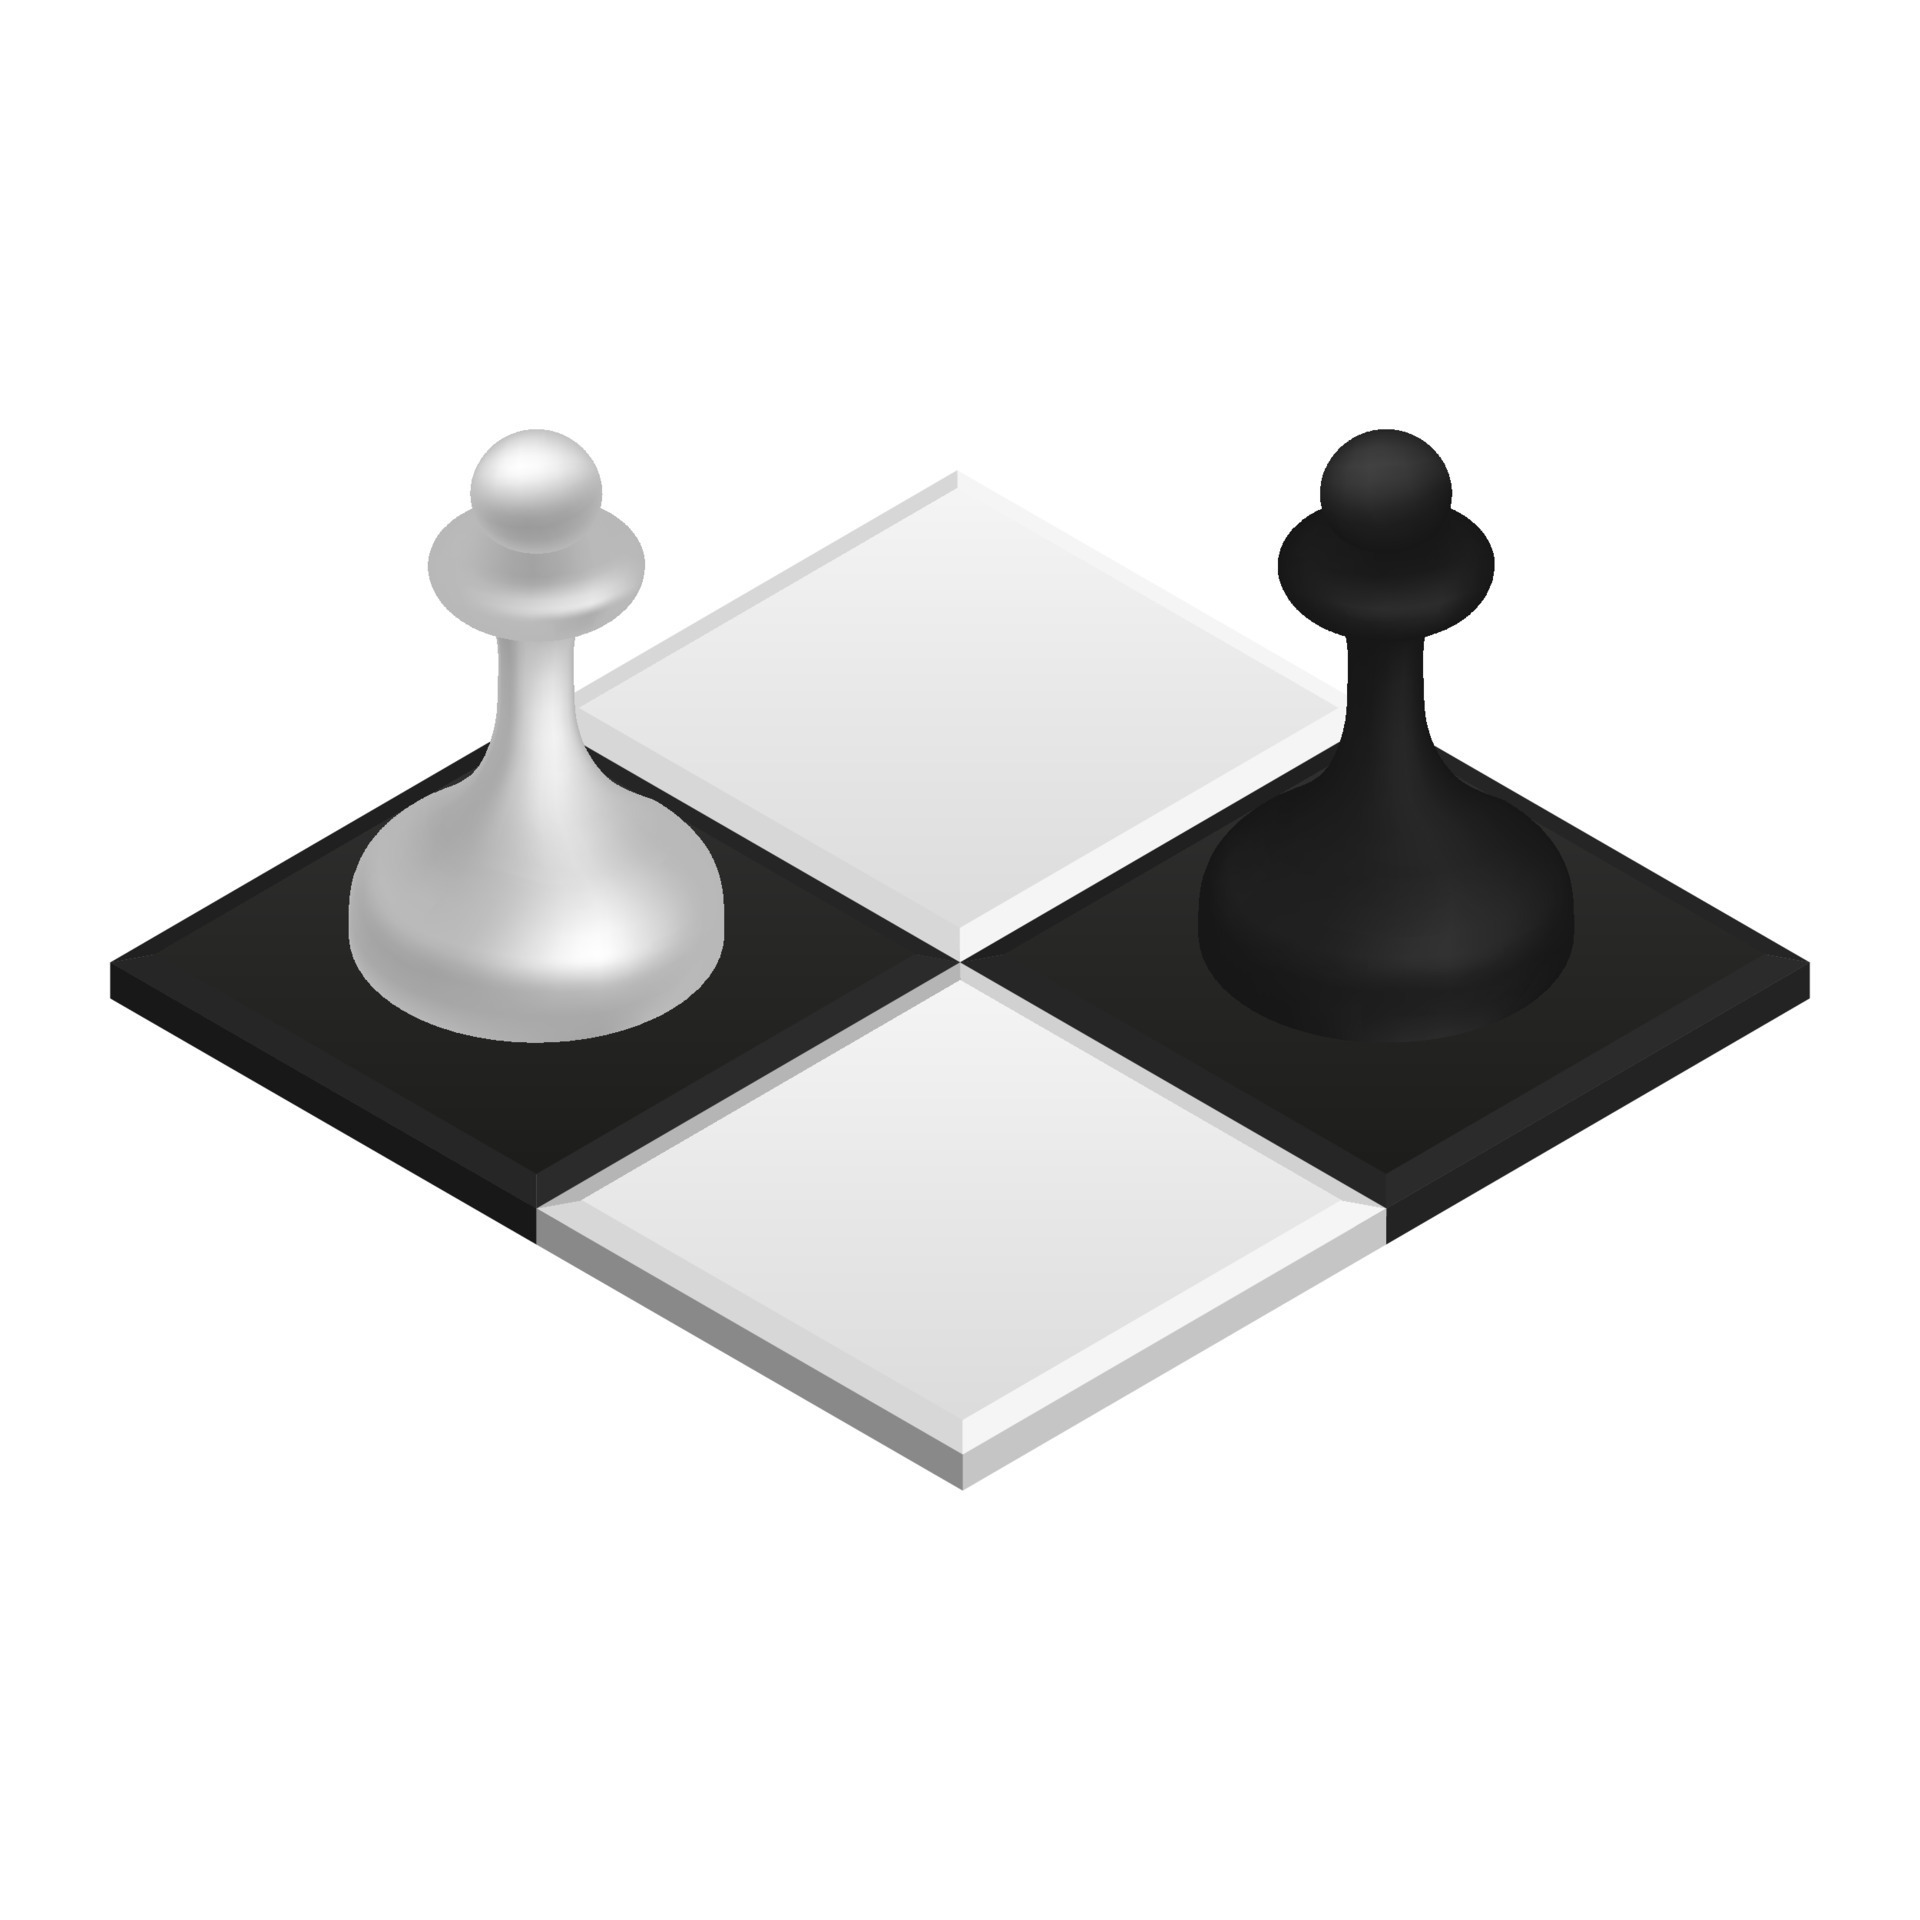 Crack pot maak het plat redden achtergrond concept van schaak bord spel. vector 3d isometrische icoon  illustratie van een schaakbord schaak bord spel achtergrond voor web  ontwerp. samenspel en wedstrijd 17283274 - Download Free Vectors, Vector  Bestanden, Ontwerpen Templates